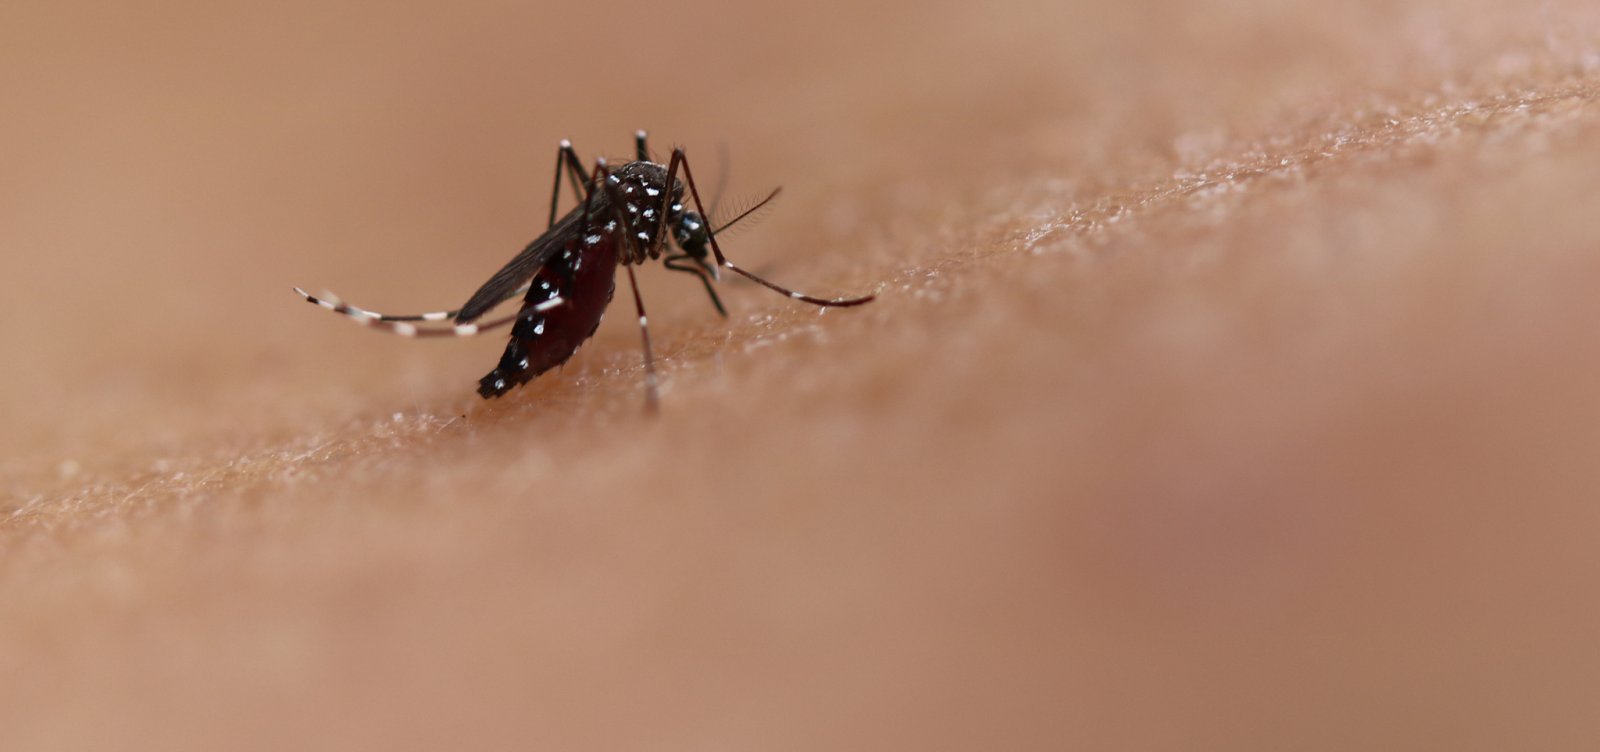 Além de gripe, casos de chikungunya disparam e acendem alerta de nova epidemia no Brasil